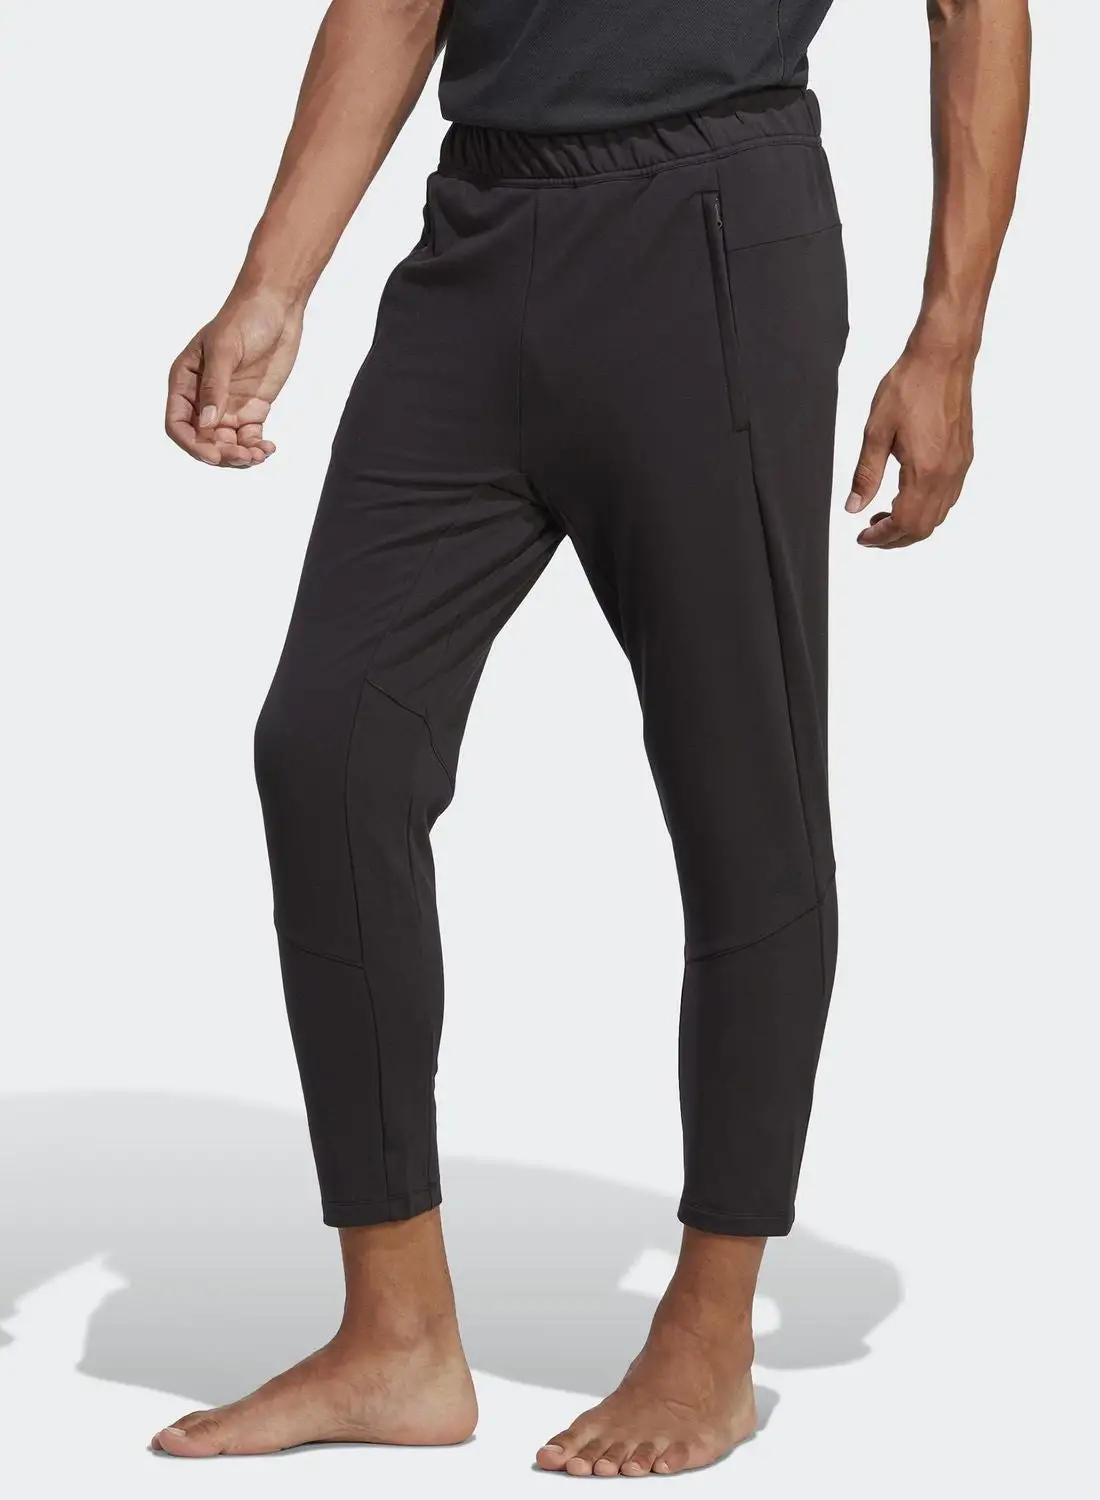 Adidas Designed For Training Yoga 7/8 Pants